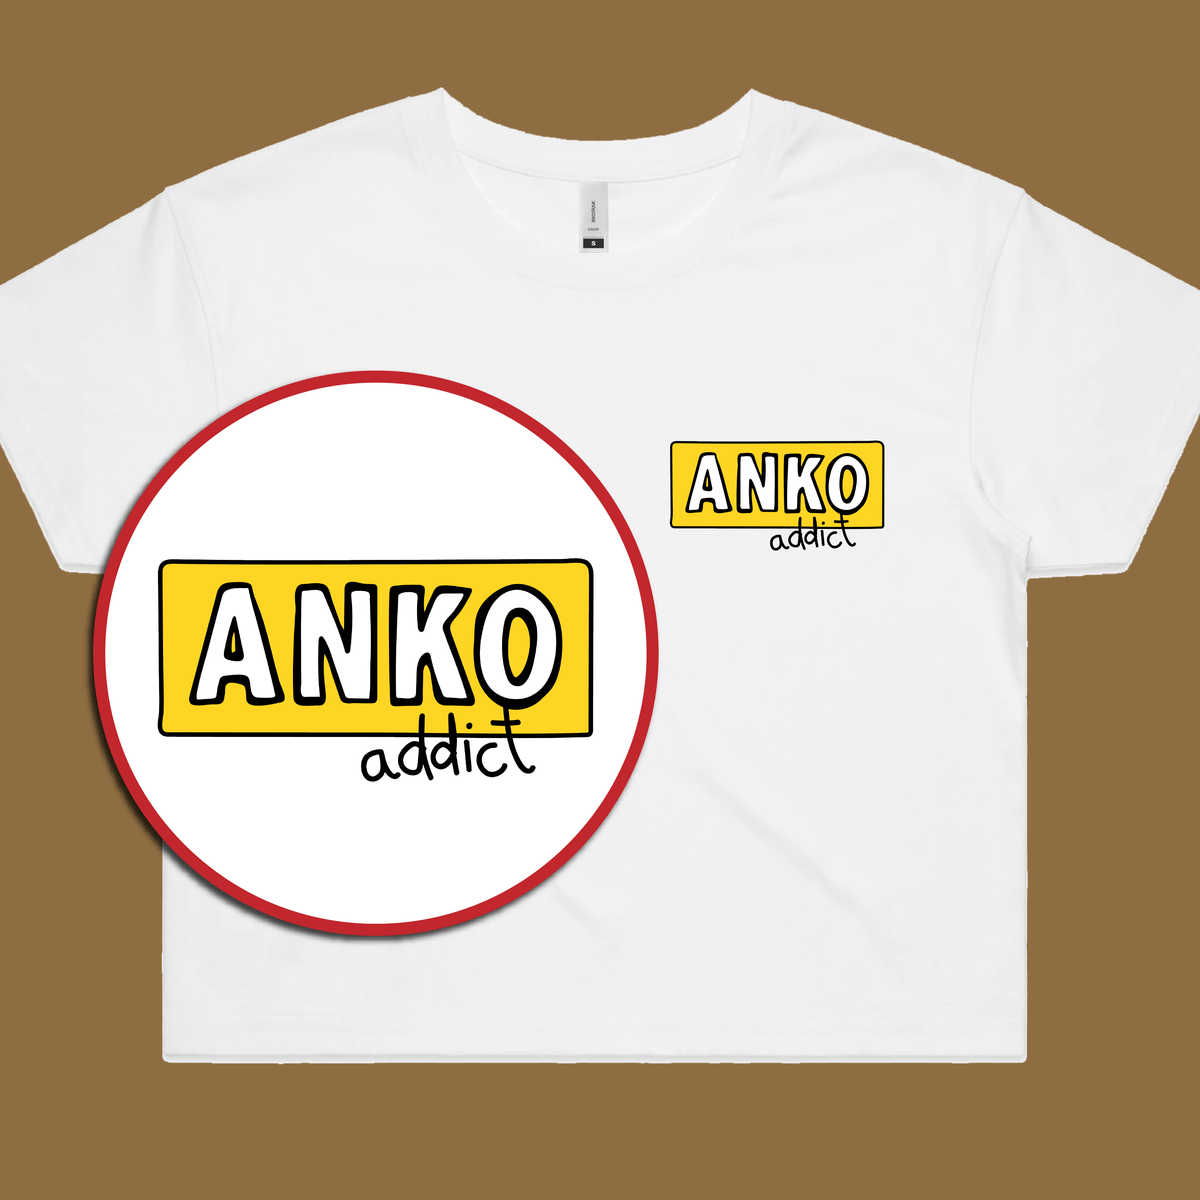 ANKO Addict 💉 - Women's Crop Top